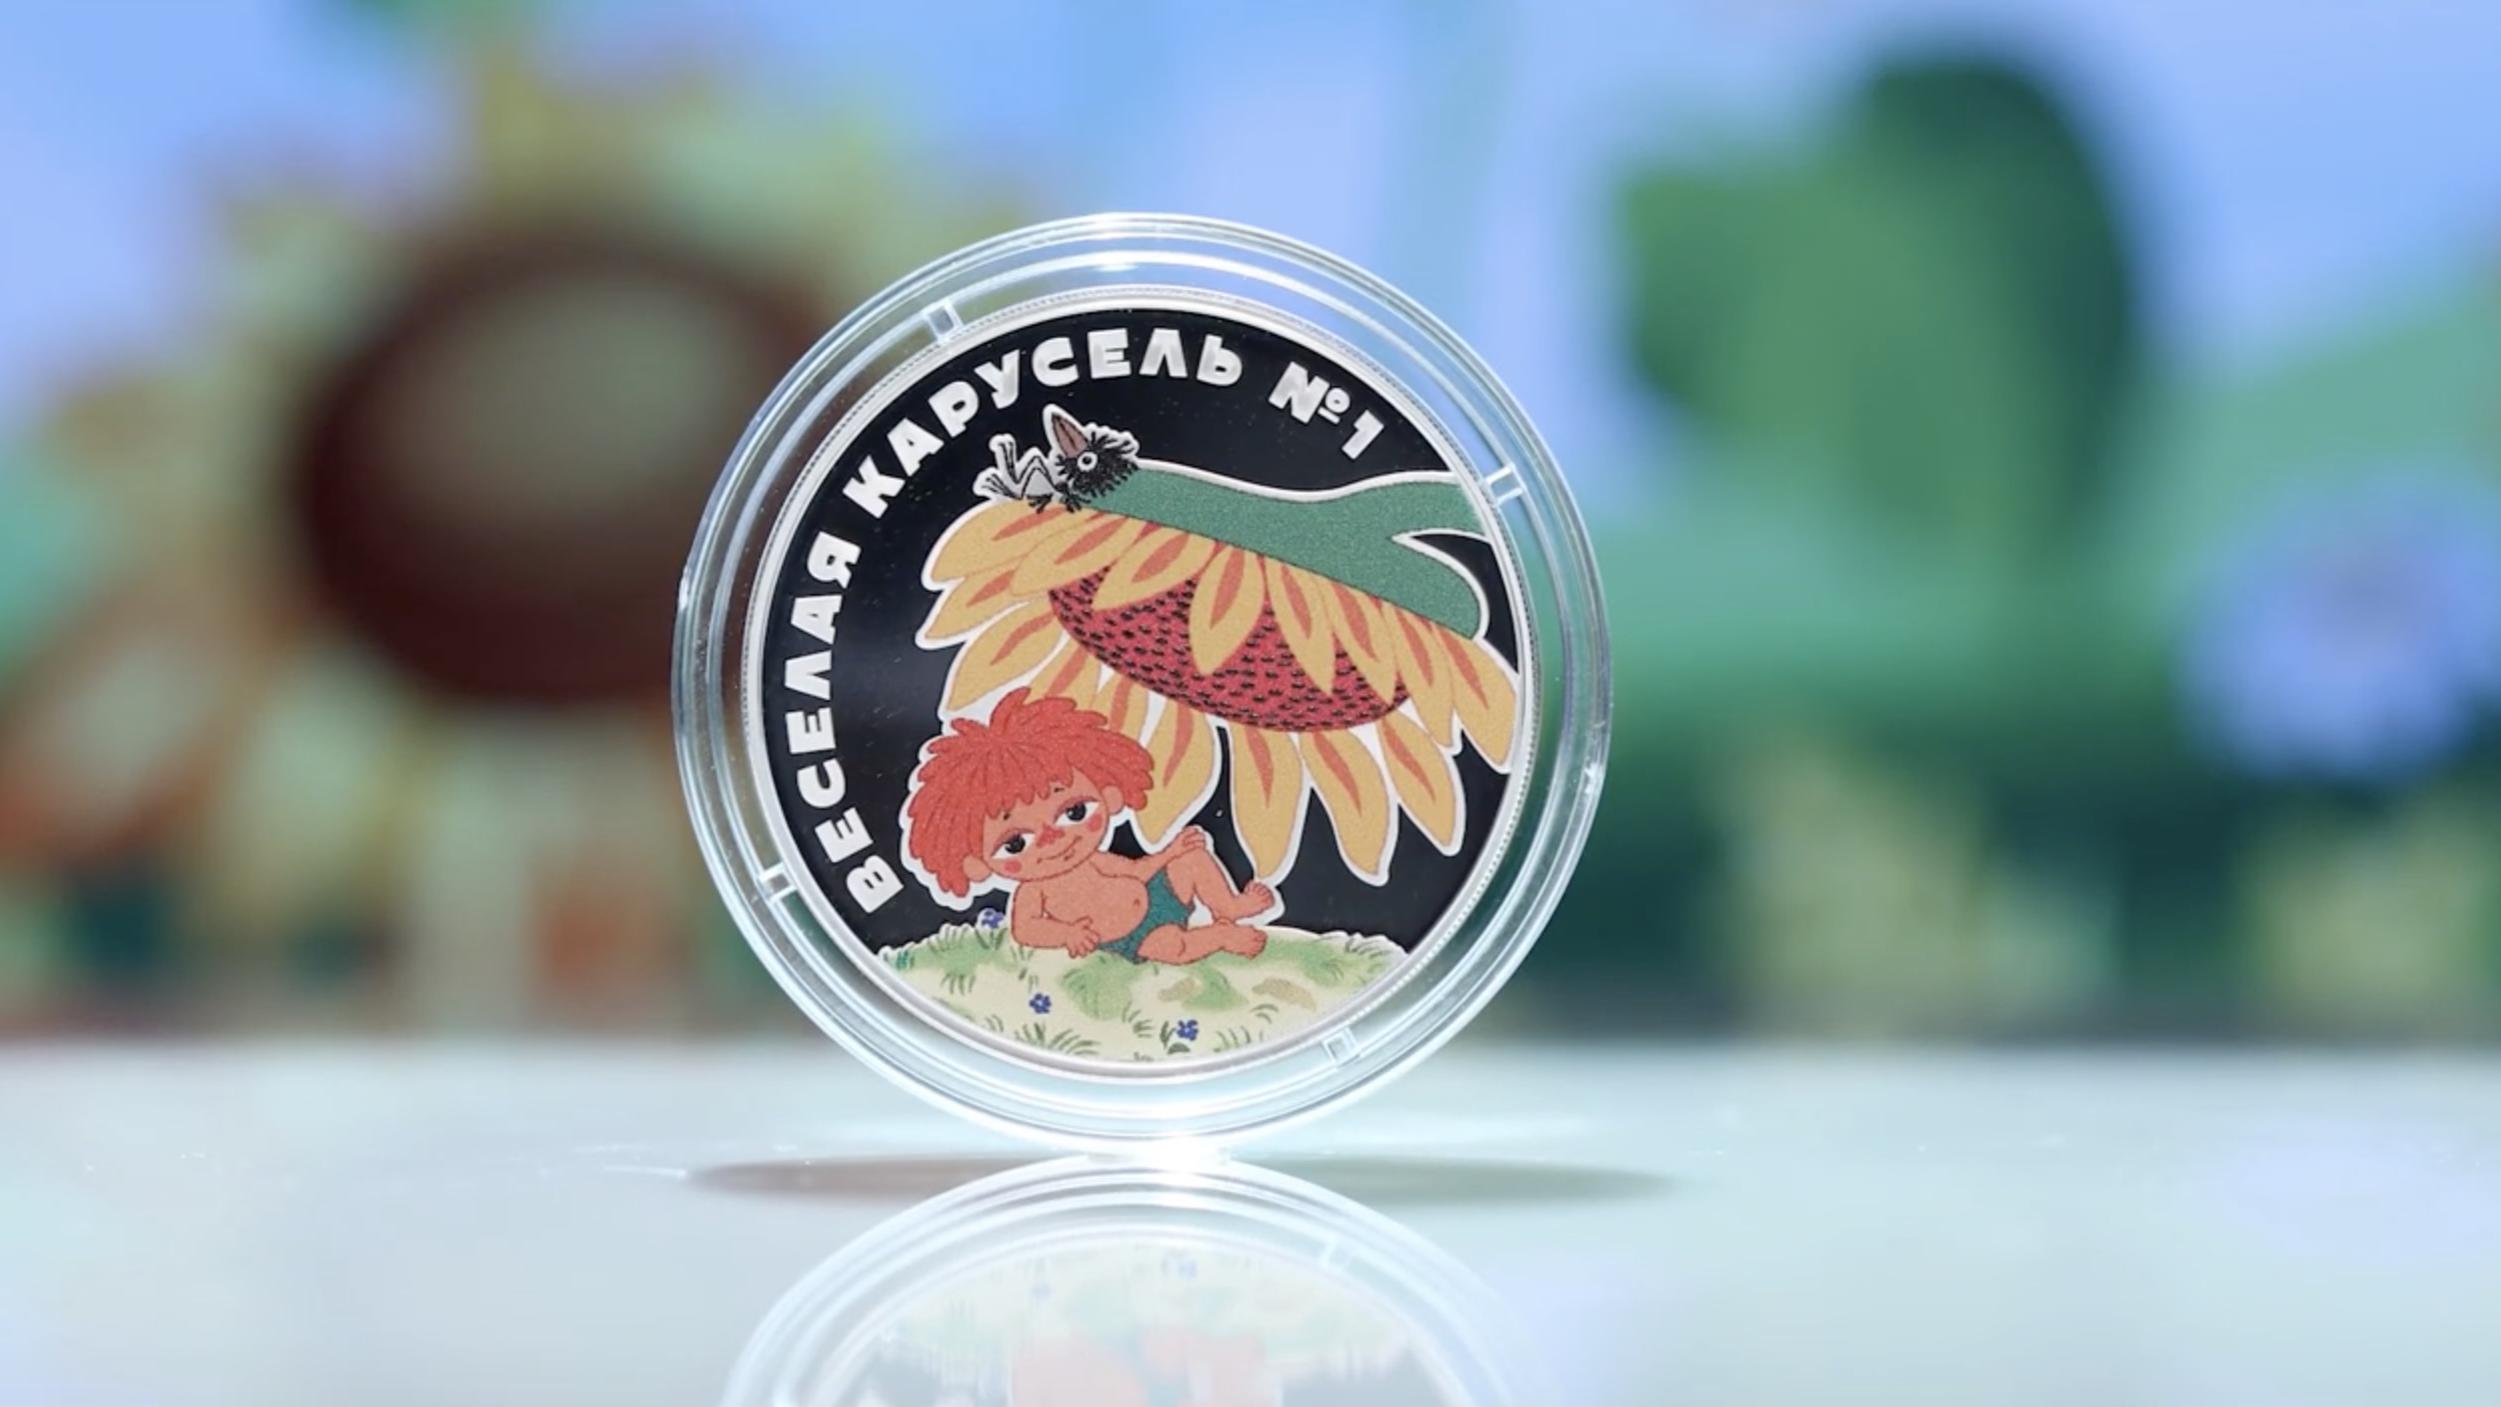 ЦБ выпустил монеты «Веселая карусель» с героем мультика «Антошка». Видео